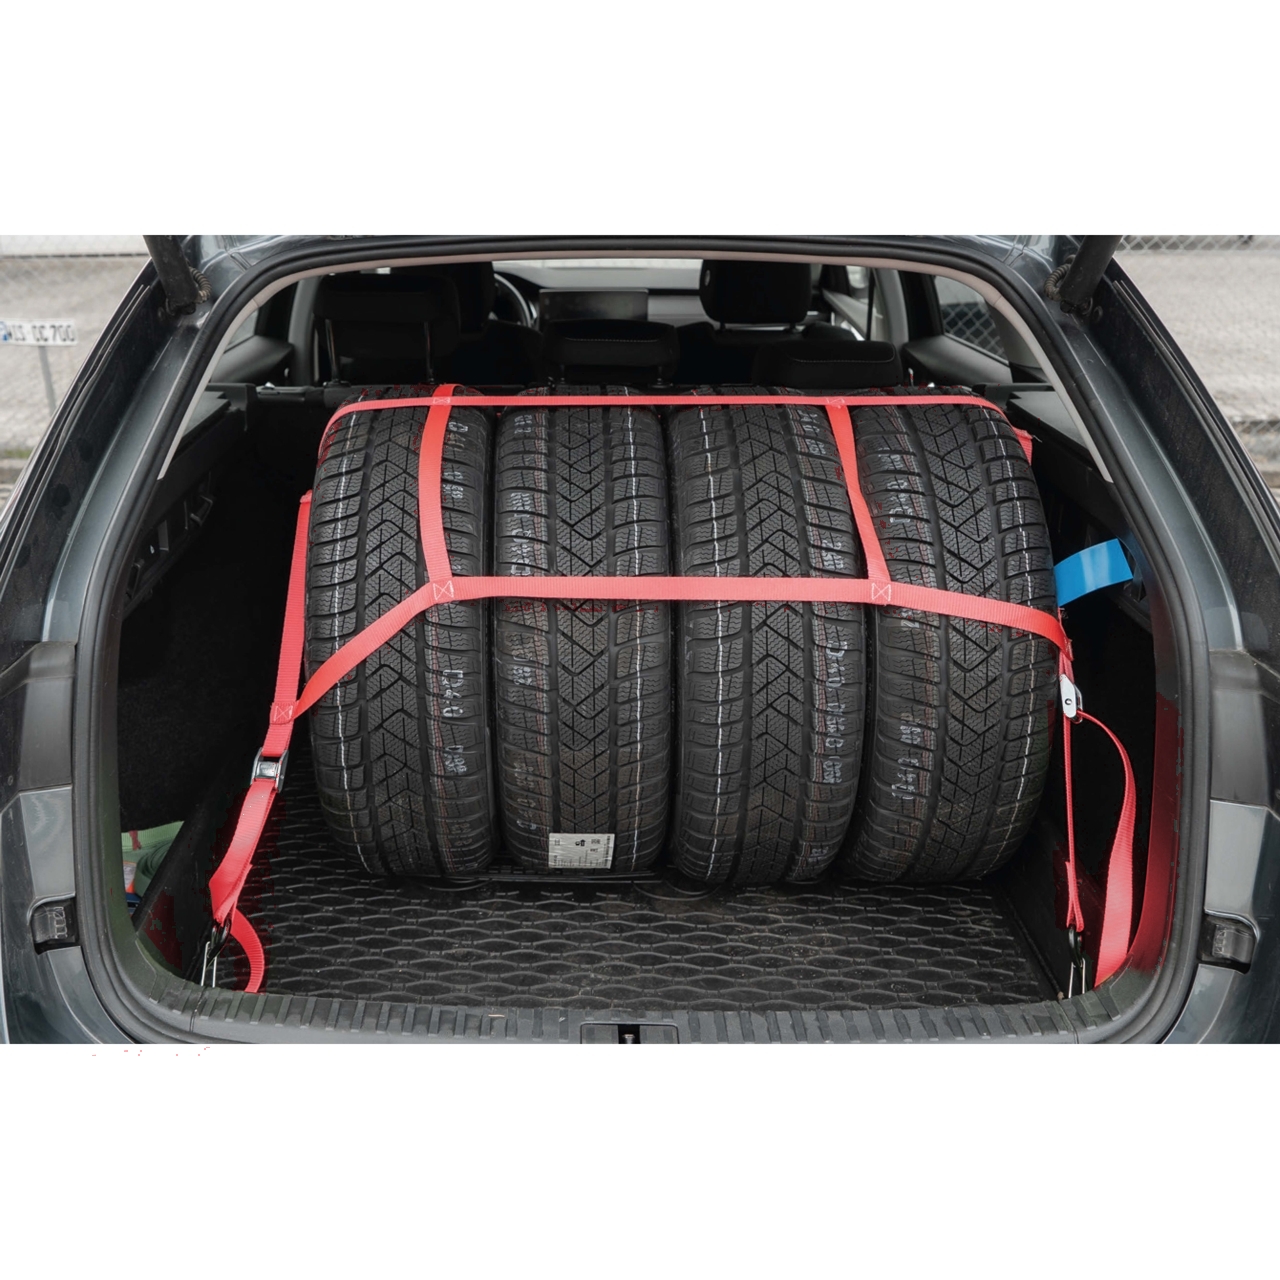 Reifennetz für Kofferraum - nur 29,95 € - zum Transport von KFZ-Rädern